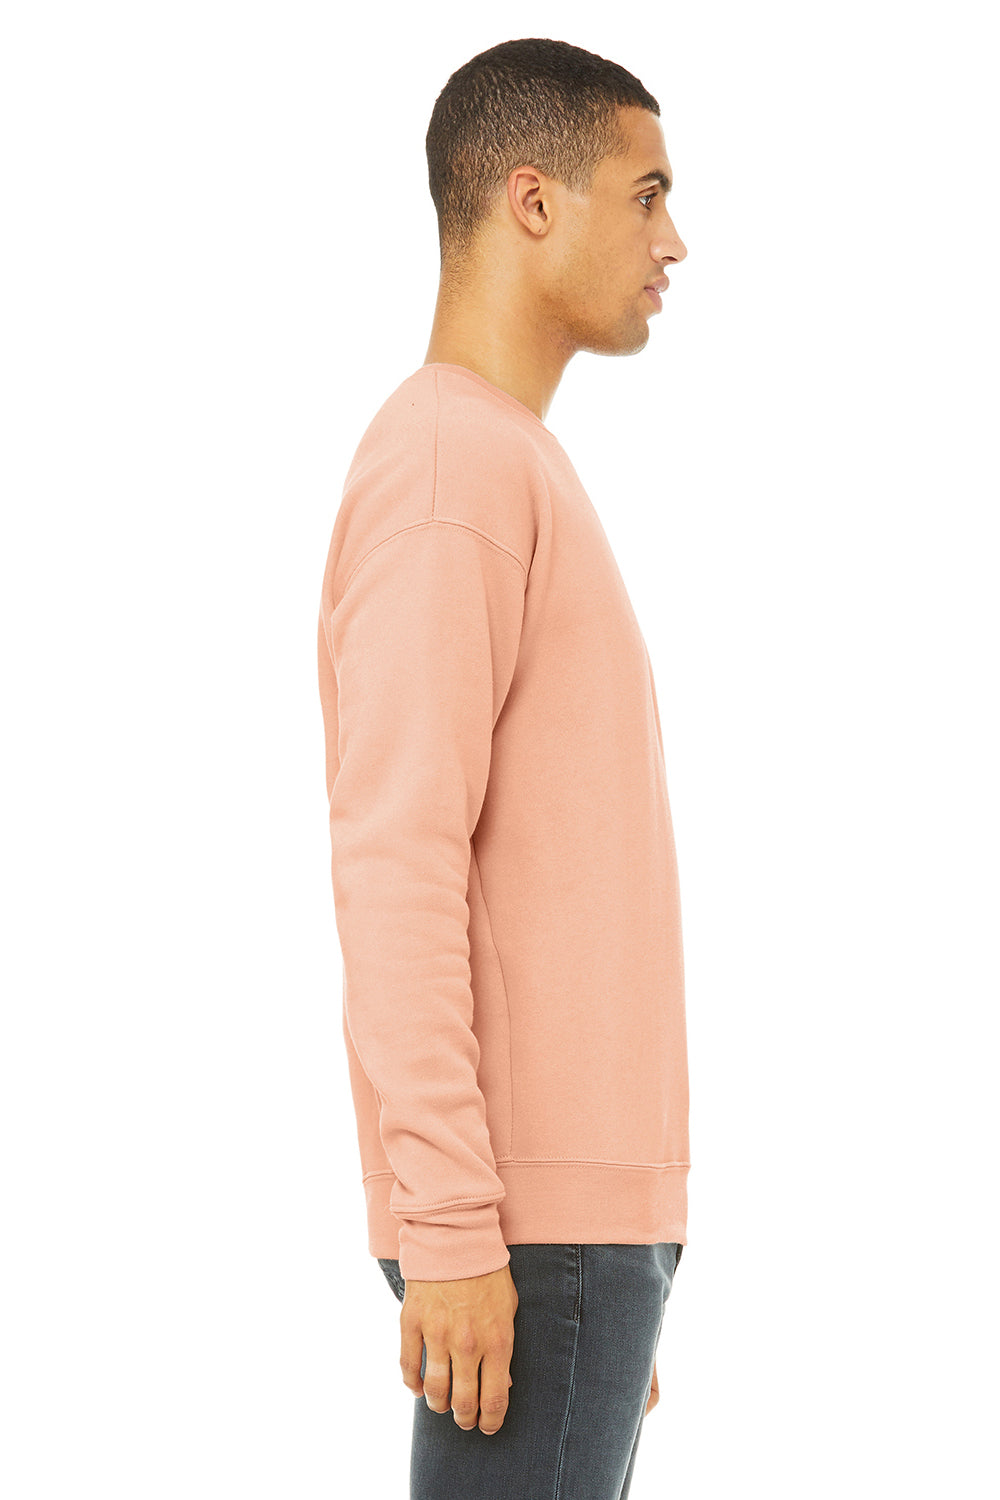 Bella + Canvas BC3945/3945 Mens Fleece Crewneck Sweatshirt Peach Model Side